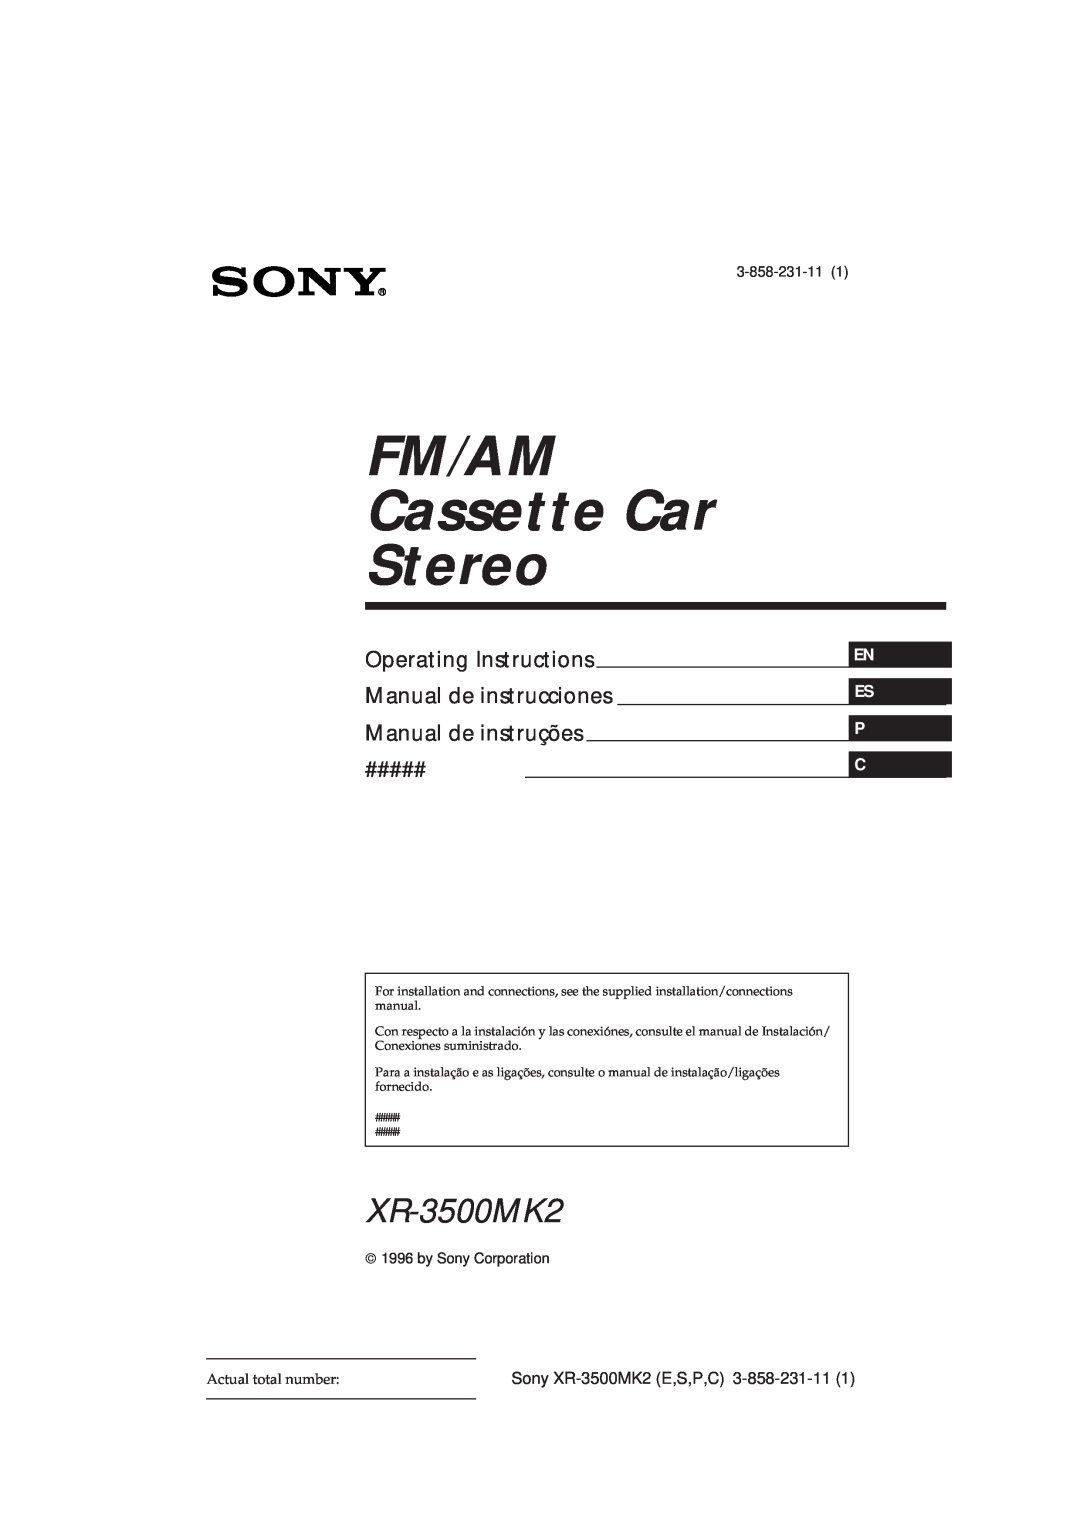 Sony manual En Es P C, Sony XR-3500MK2E,S,P,C, 3-858-231-111, by Sony Corporation, FM/AM Cassette Car Stereo 